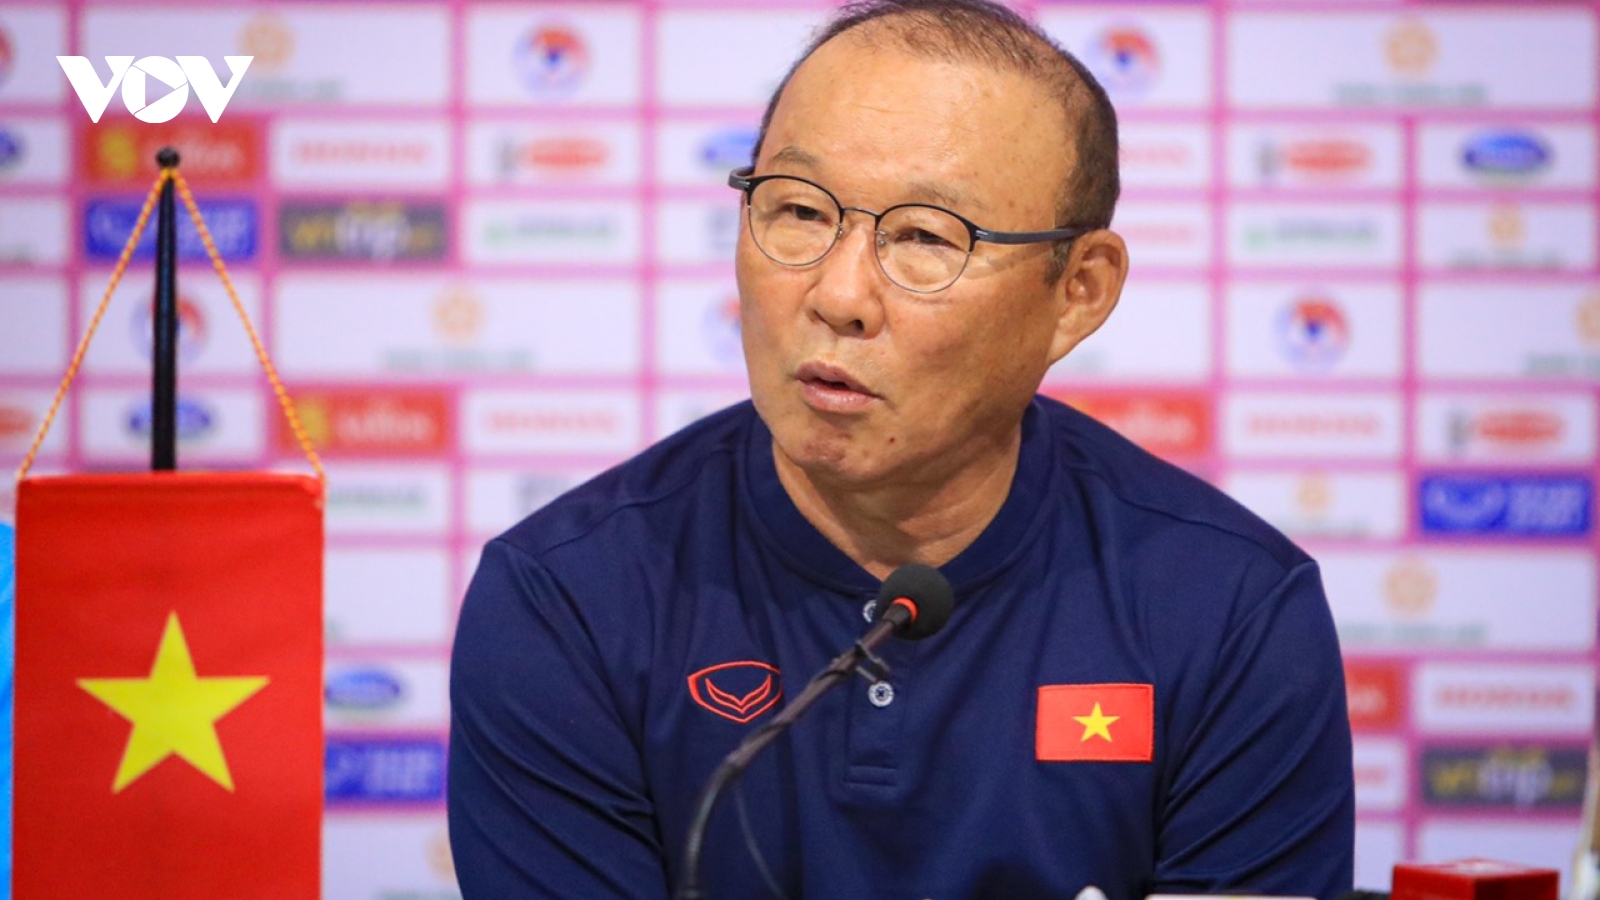 HLV Park Hang Seo đã có phương án thay Quang Hải ở AFF Cup 2022